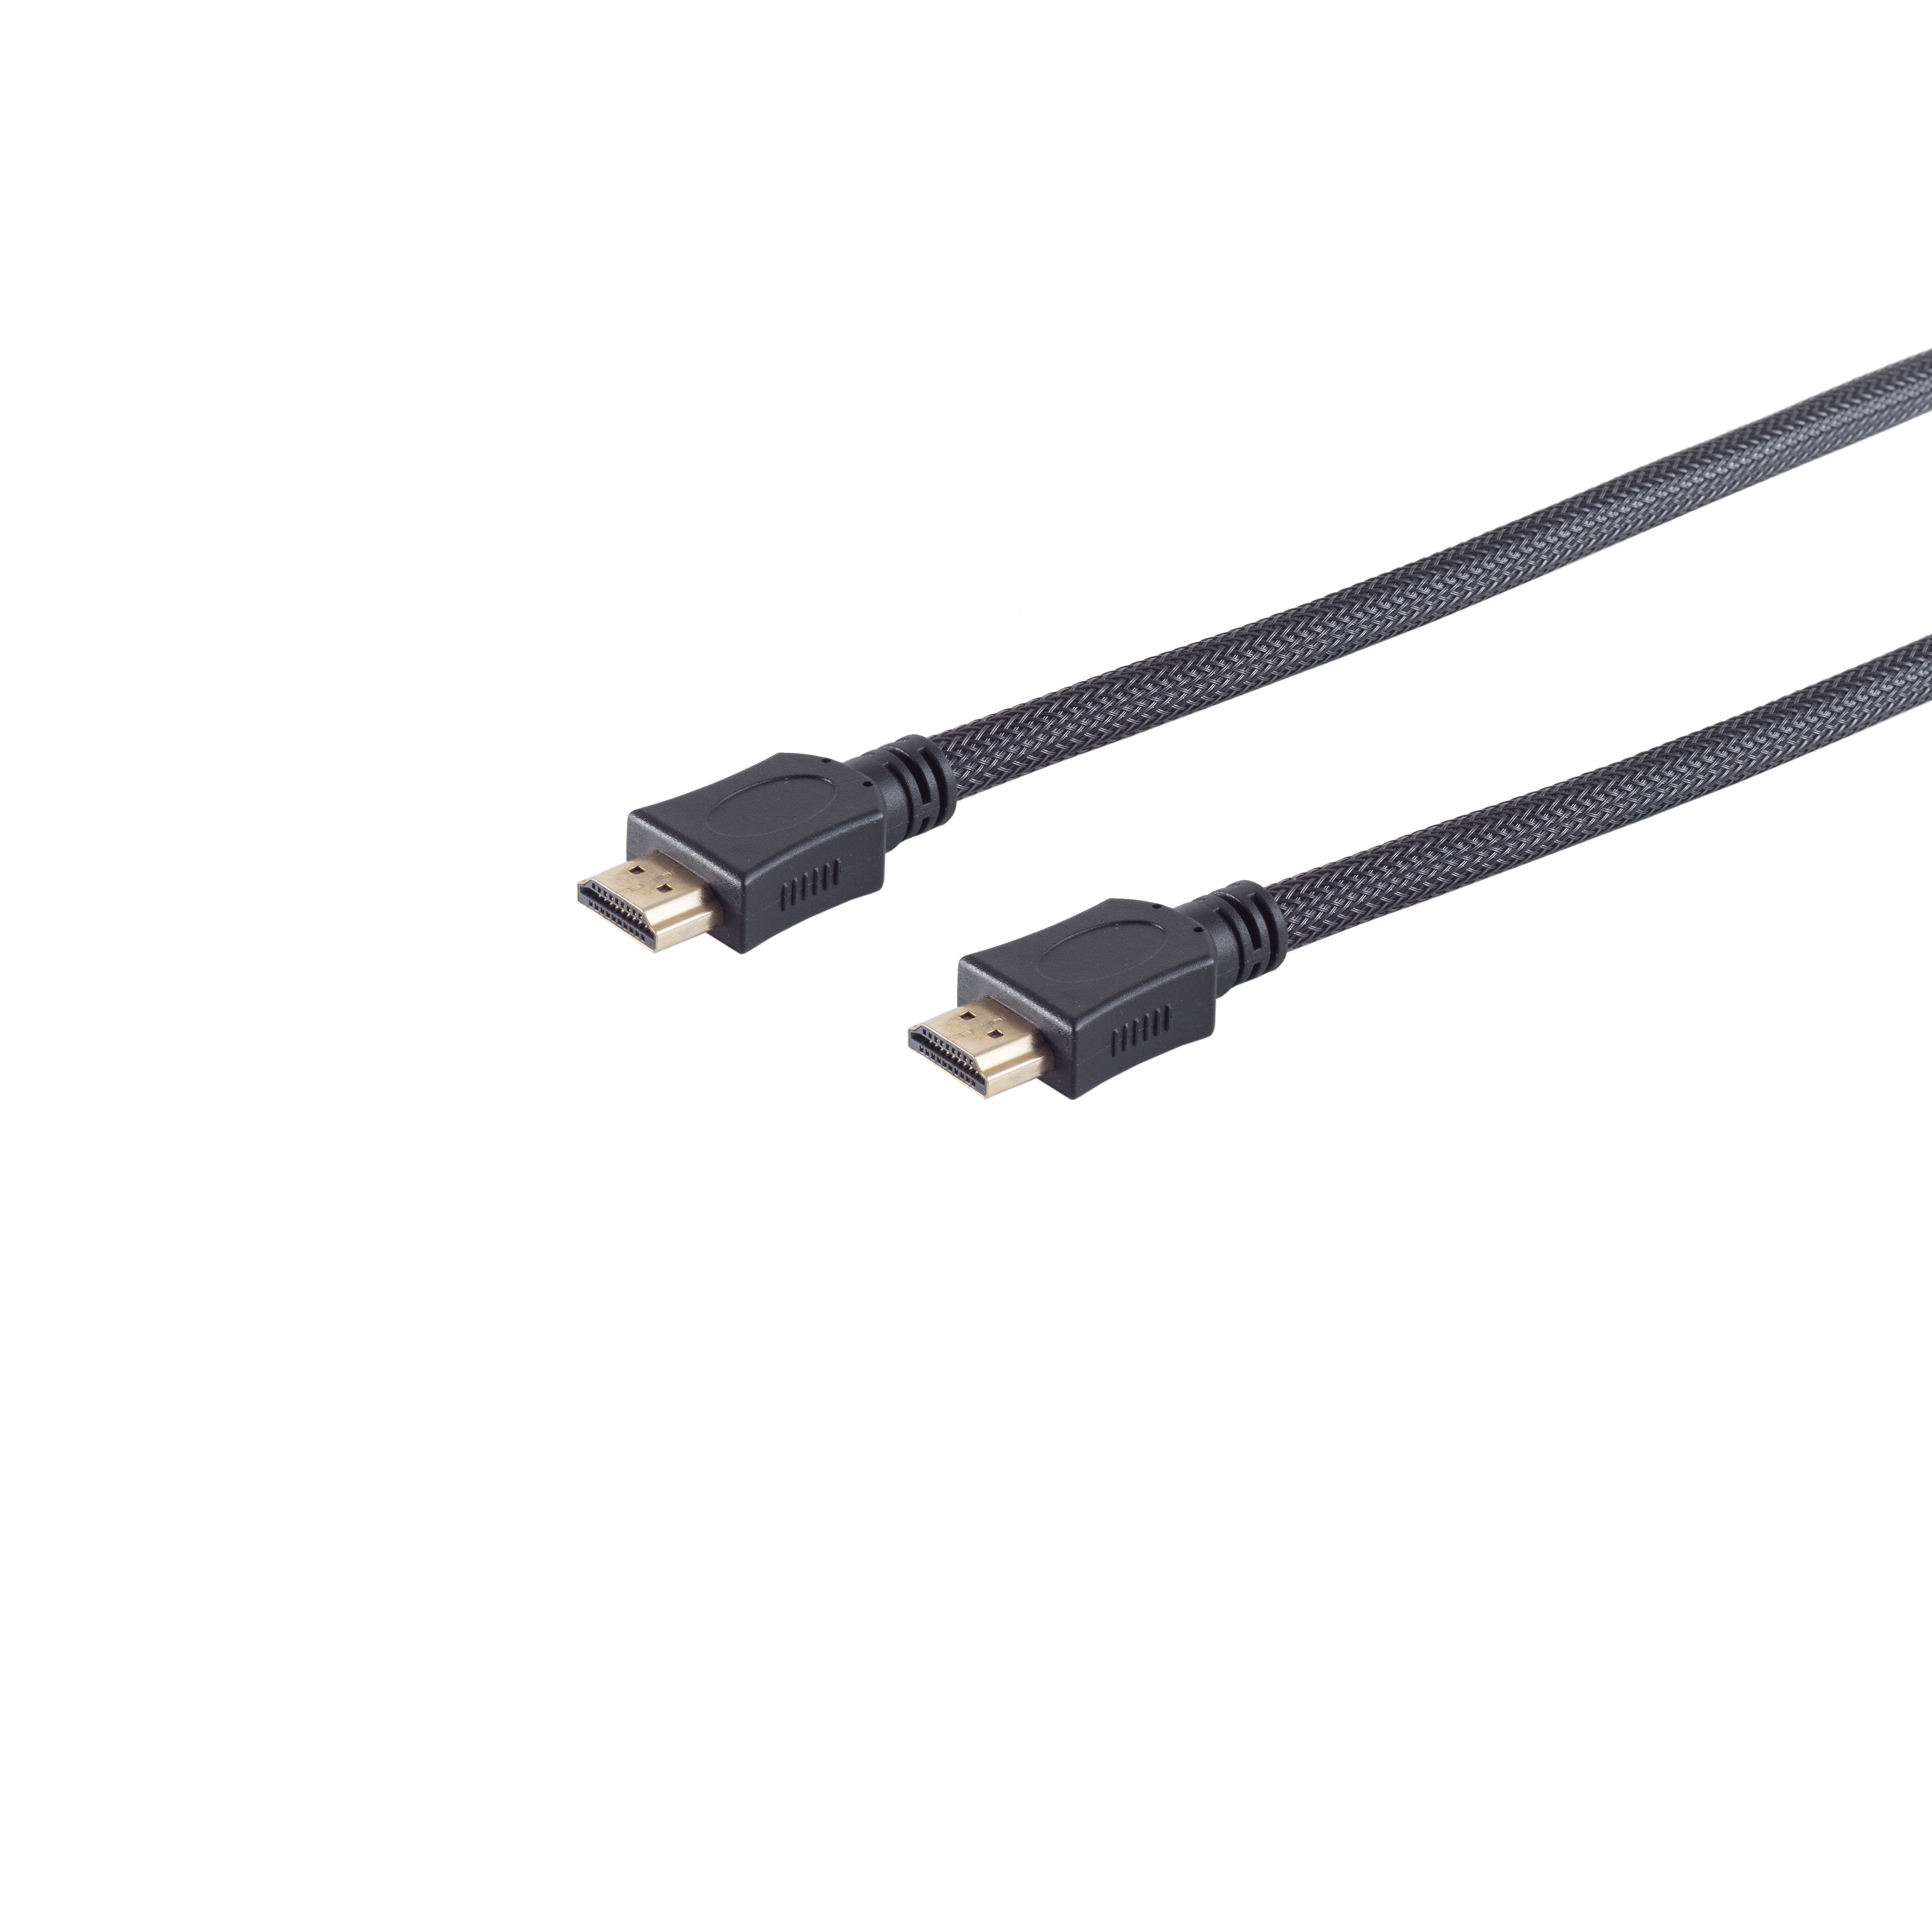 Nylon HDMI sw MAXIMUM A-St. S/CONN 1m HDMI Kabel HEAC A-St./HDMI CONNECTIVITY verg Mantel